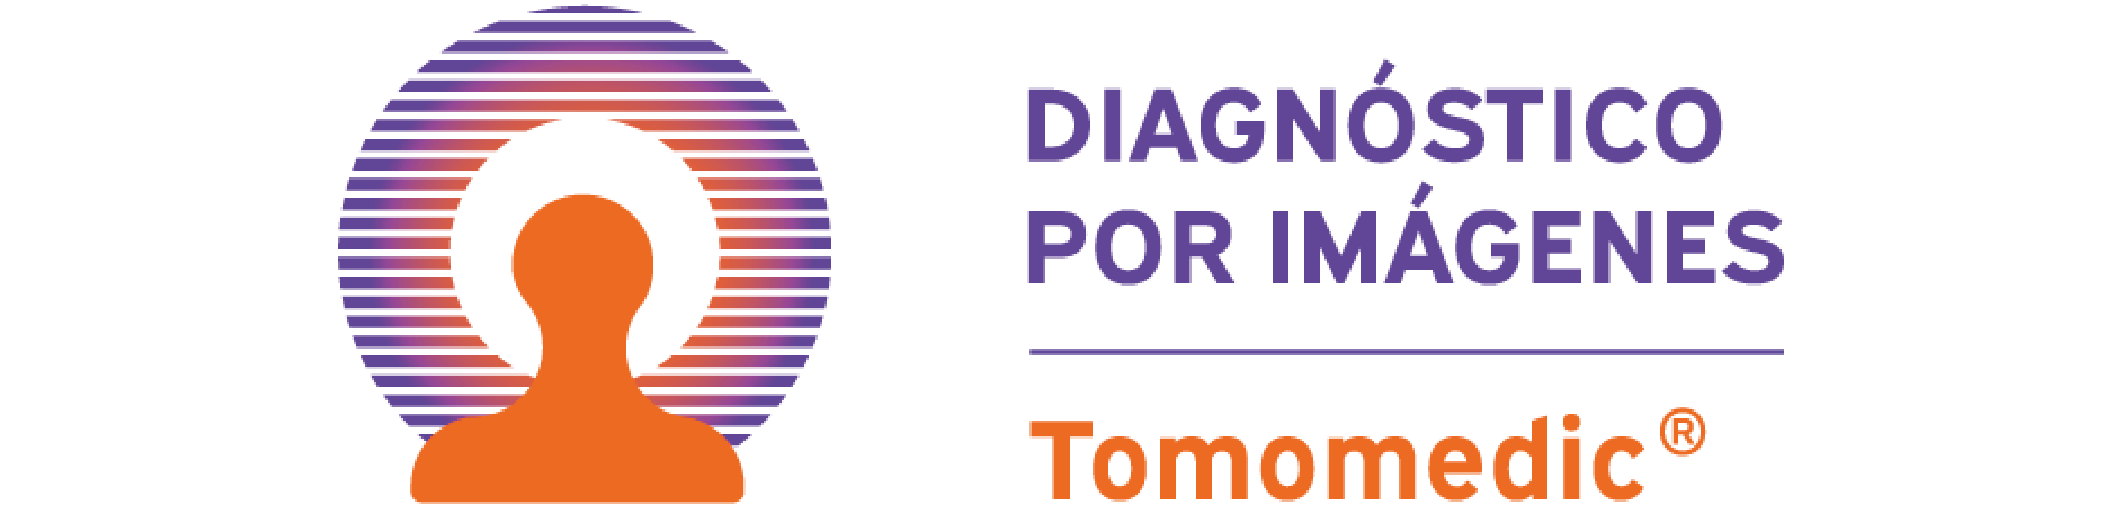 Logo Tomomedic desktop